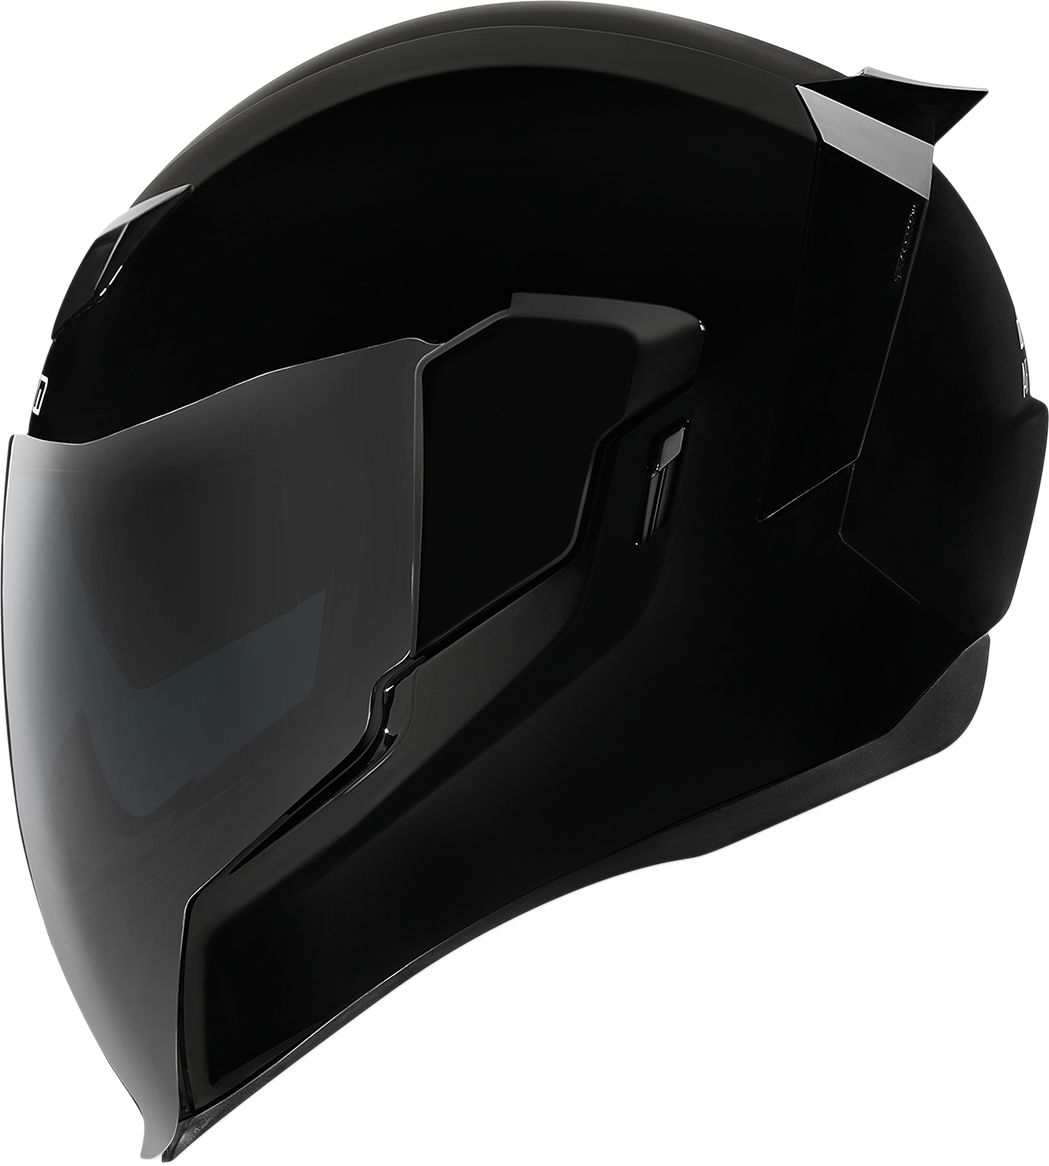 ICON Airflite™ Helmet - Gloss - Black - Small 0101-10855